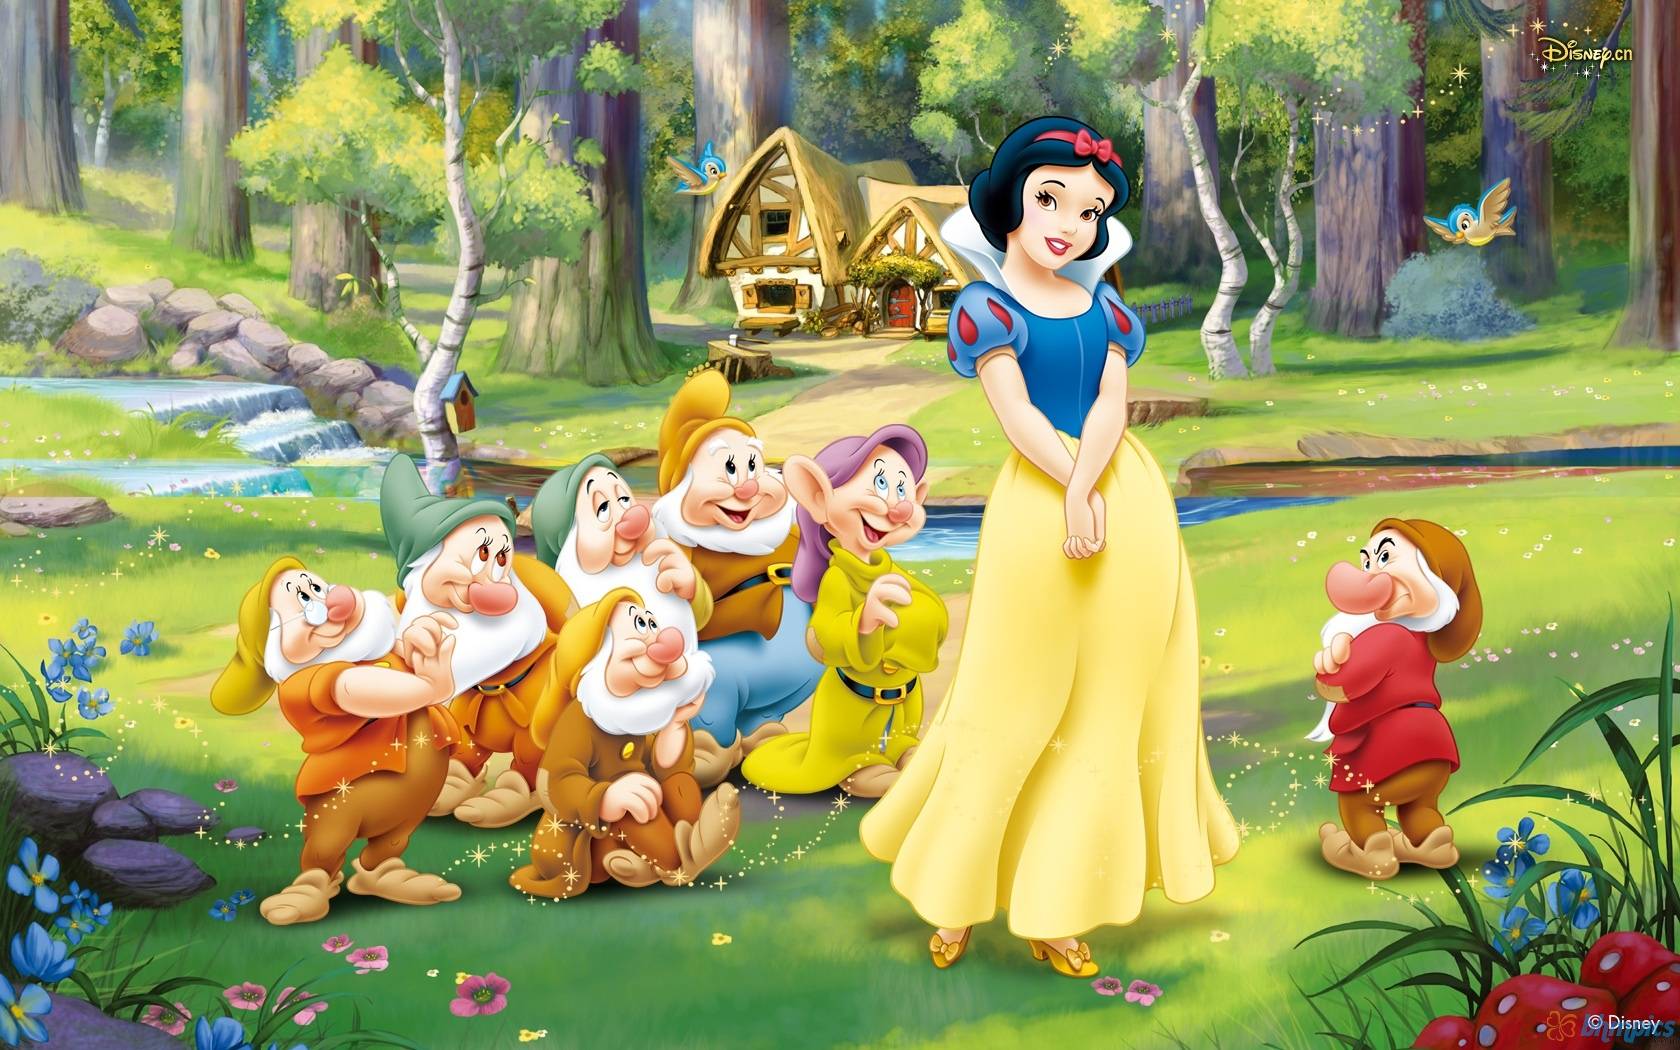 Snow White Disney Wallpapers - Top Free ...